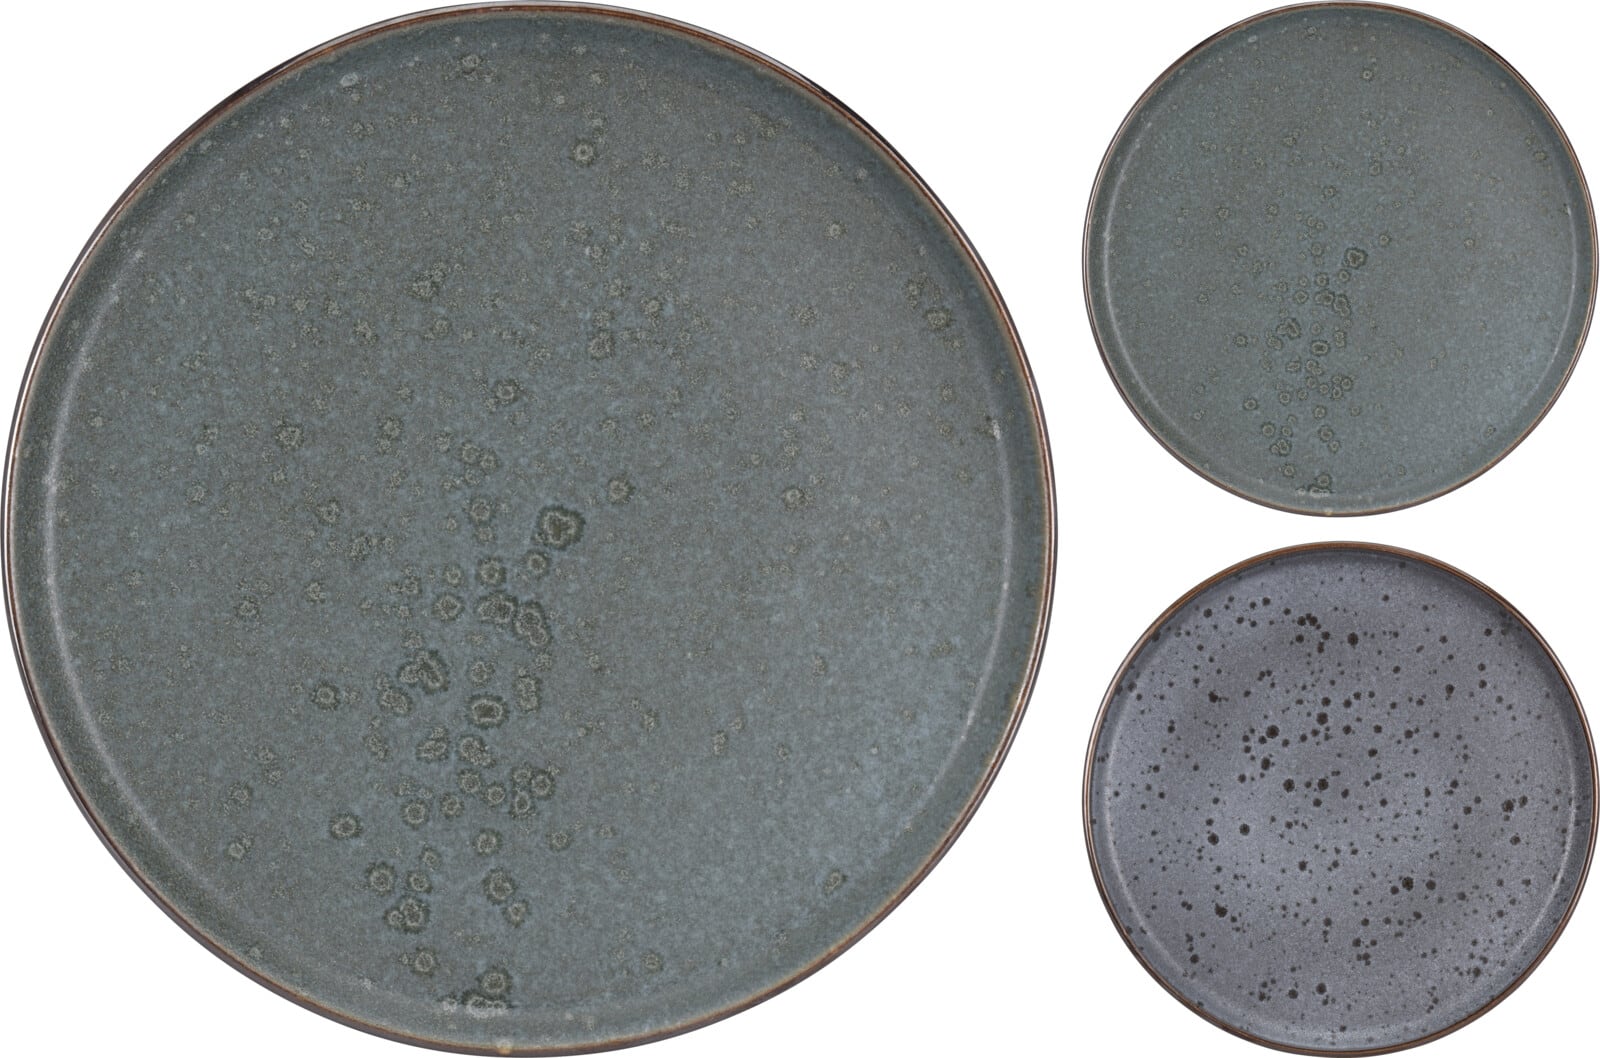 4goodz 6 stuks Aardewerk Ontbijtborden in 2 kleuren grijs/blauw 21 cm